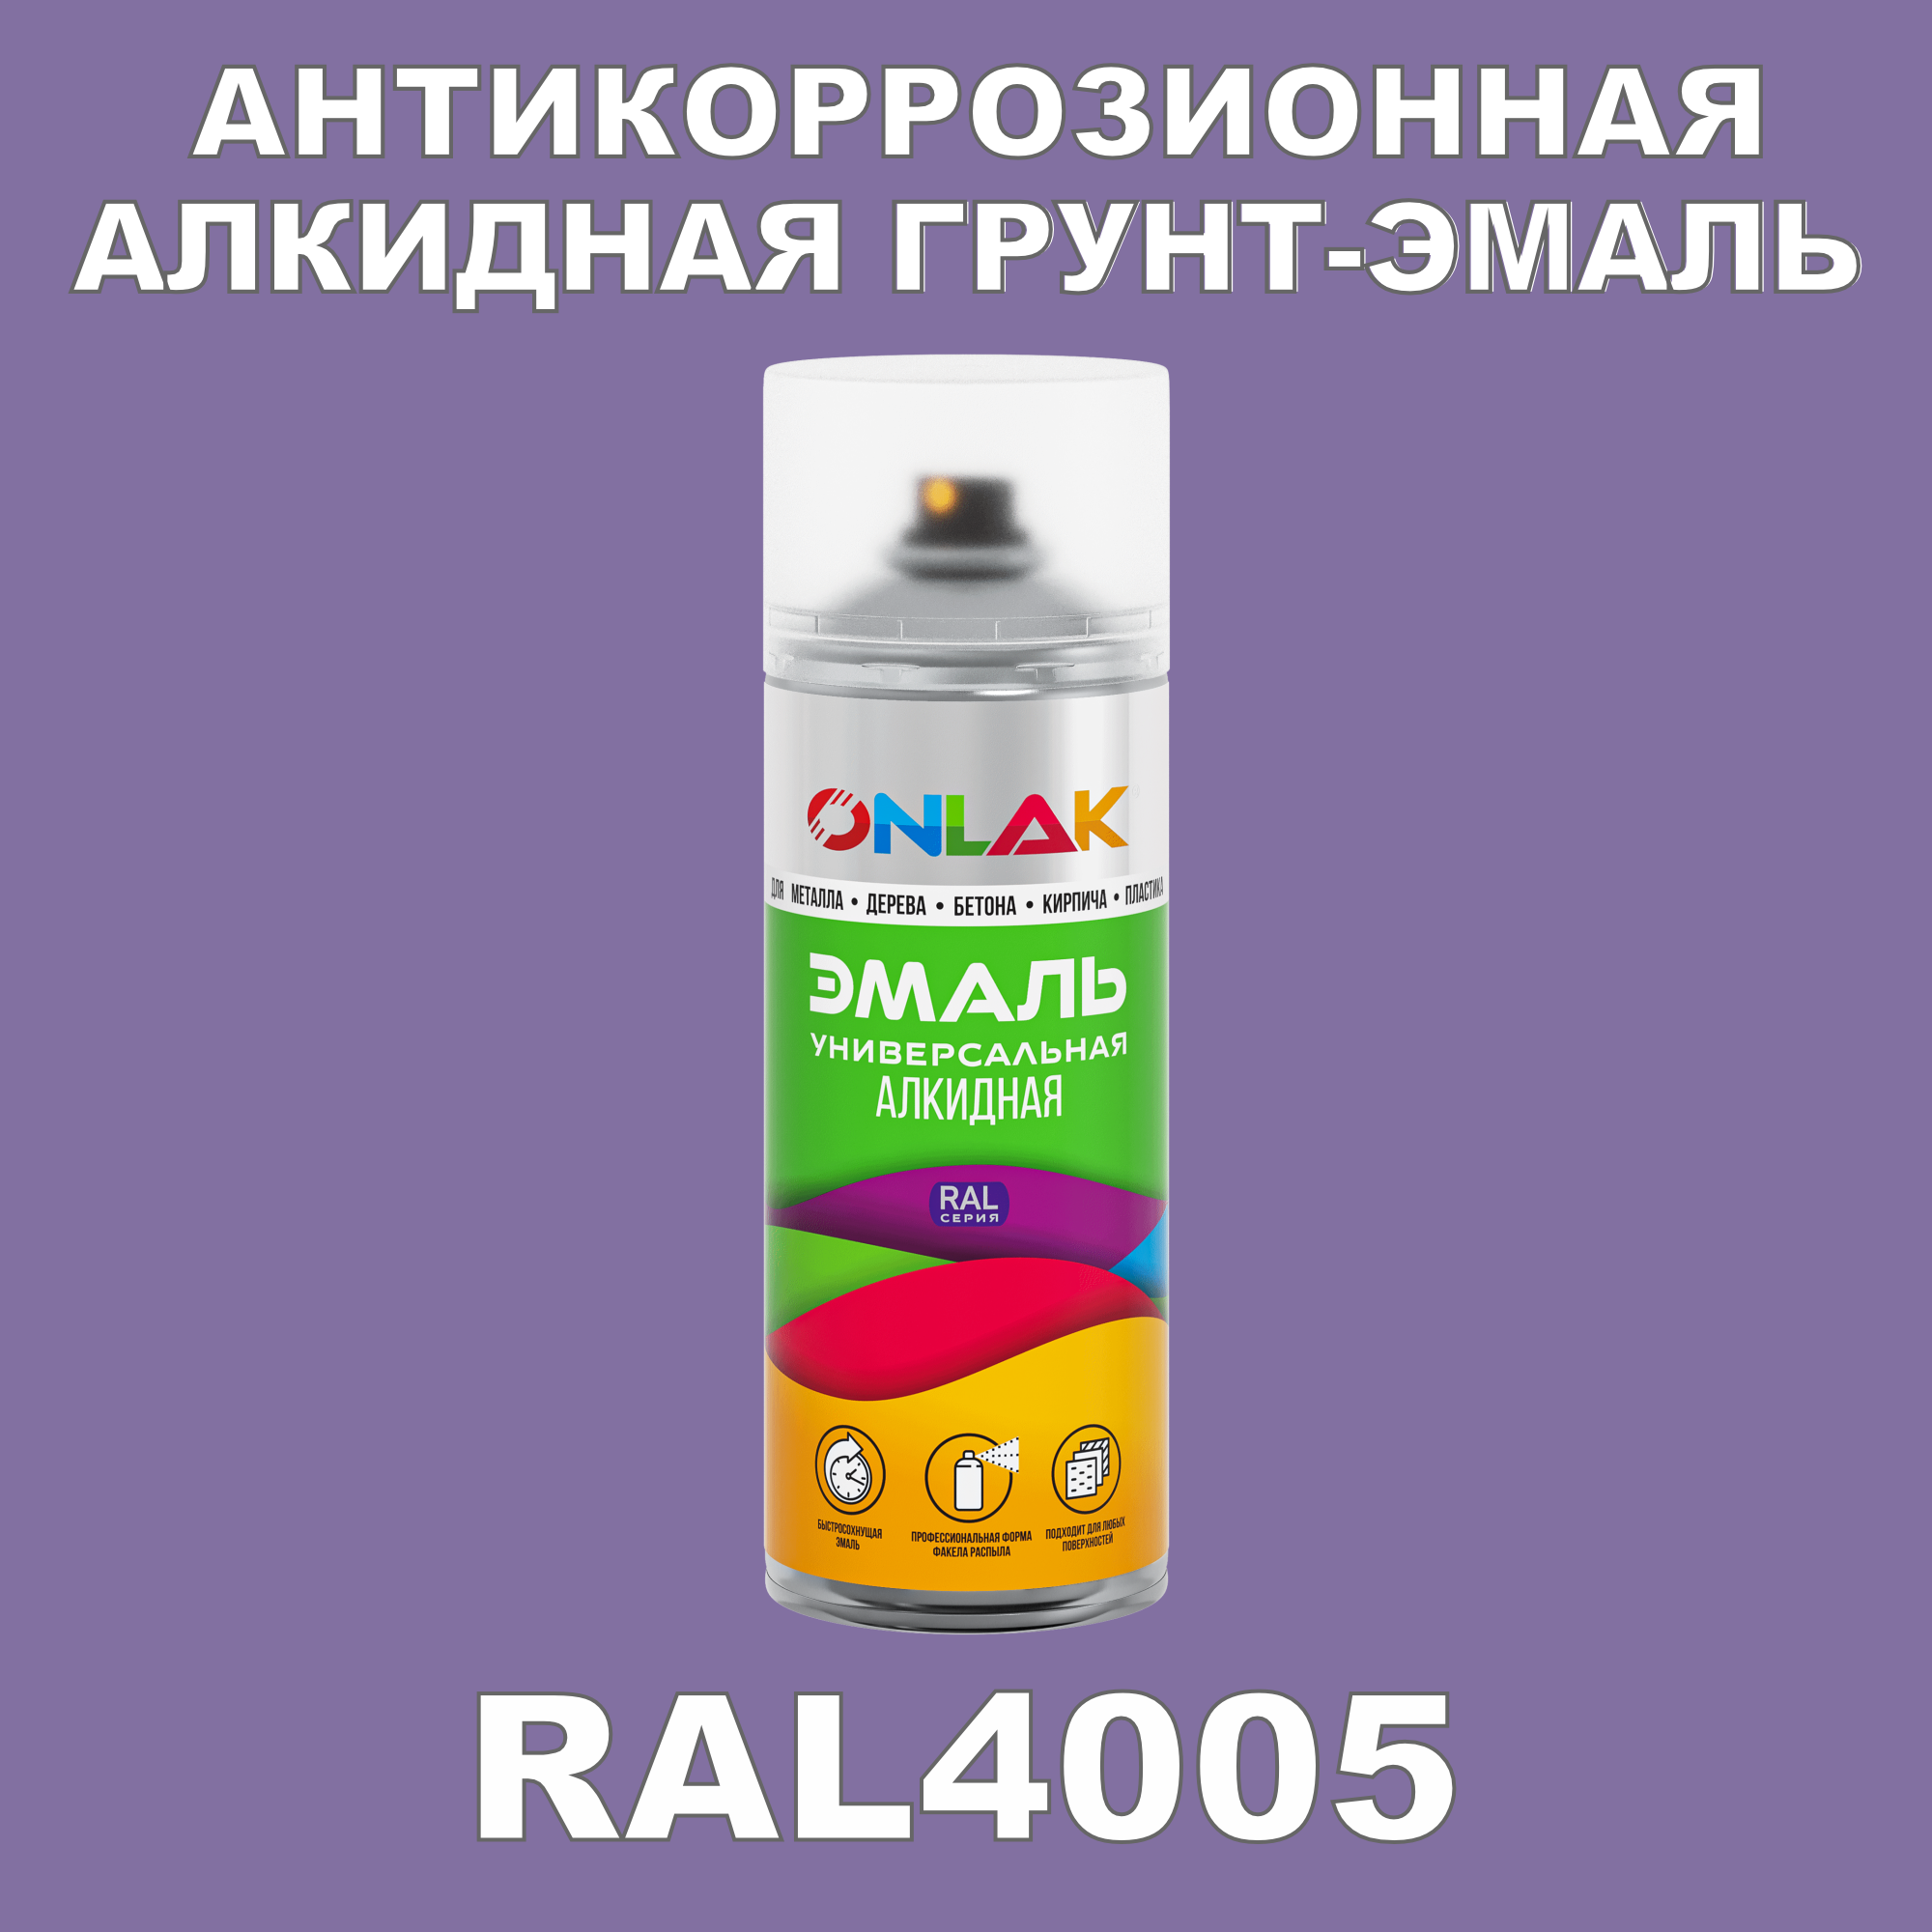 Антикоррозионная грунт-эмаль ONLAK RAL 4005,фиолетовый,662 мл artuniq color violet ной грунт для аквариума фиолетовый 1 кг